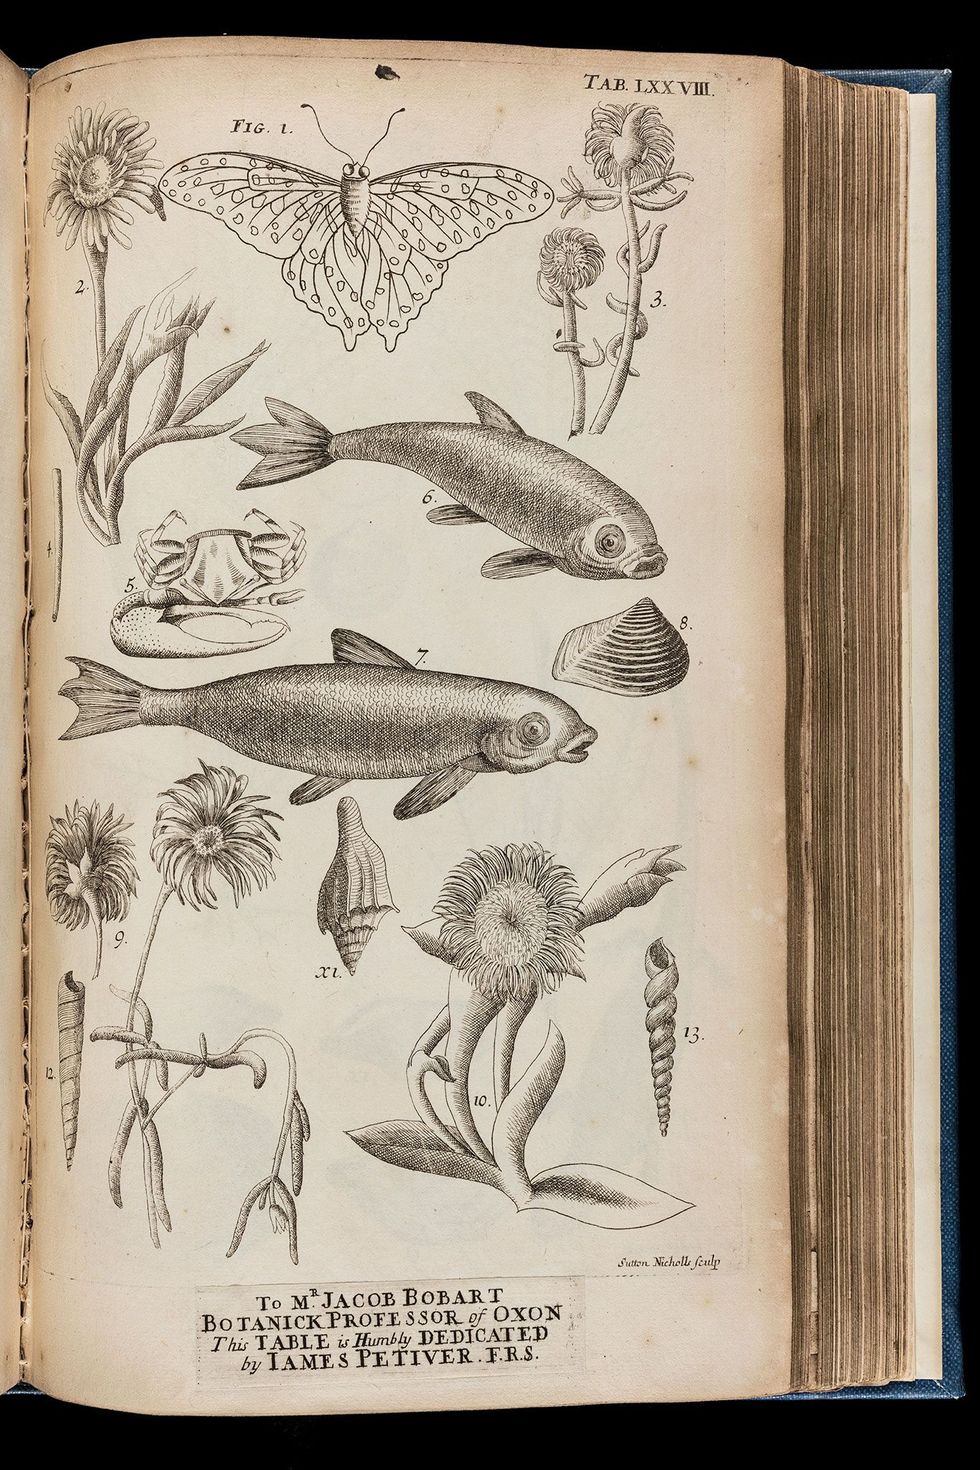 Deze eerste tekening van een goudvis in Engeland op de foto werd in 1711 gemaakt door de botanicus James Petiver